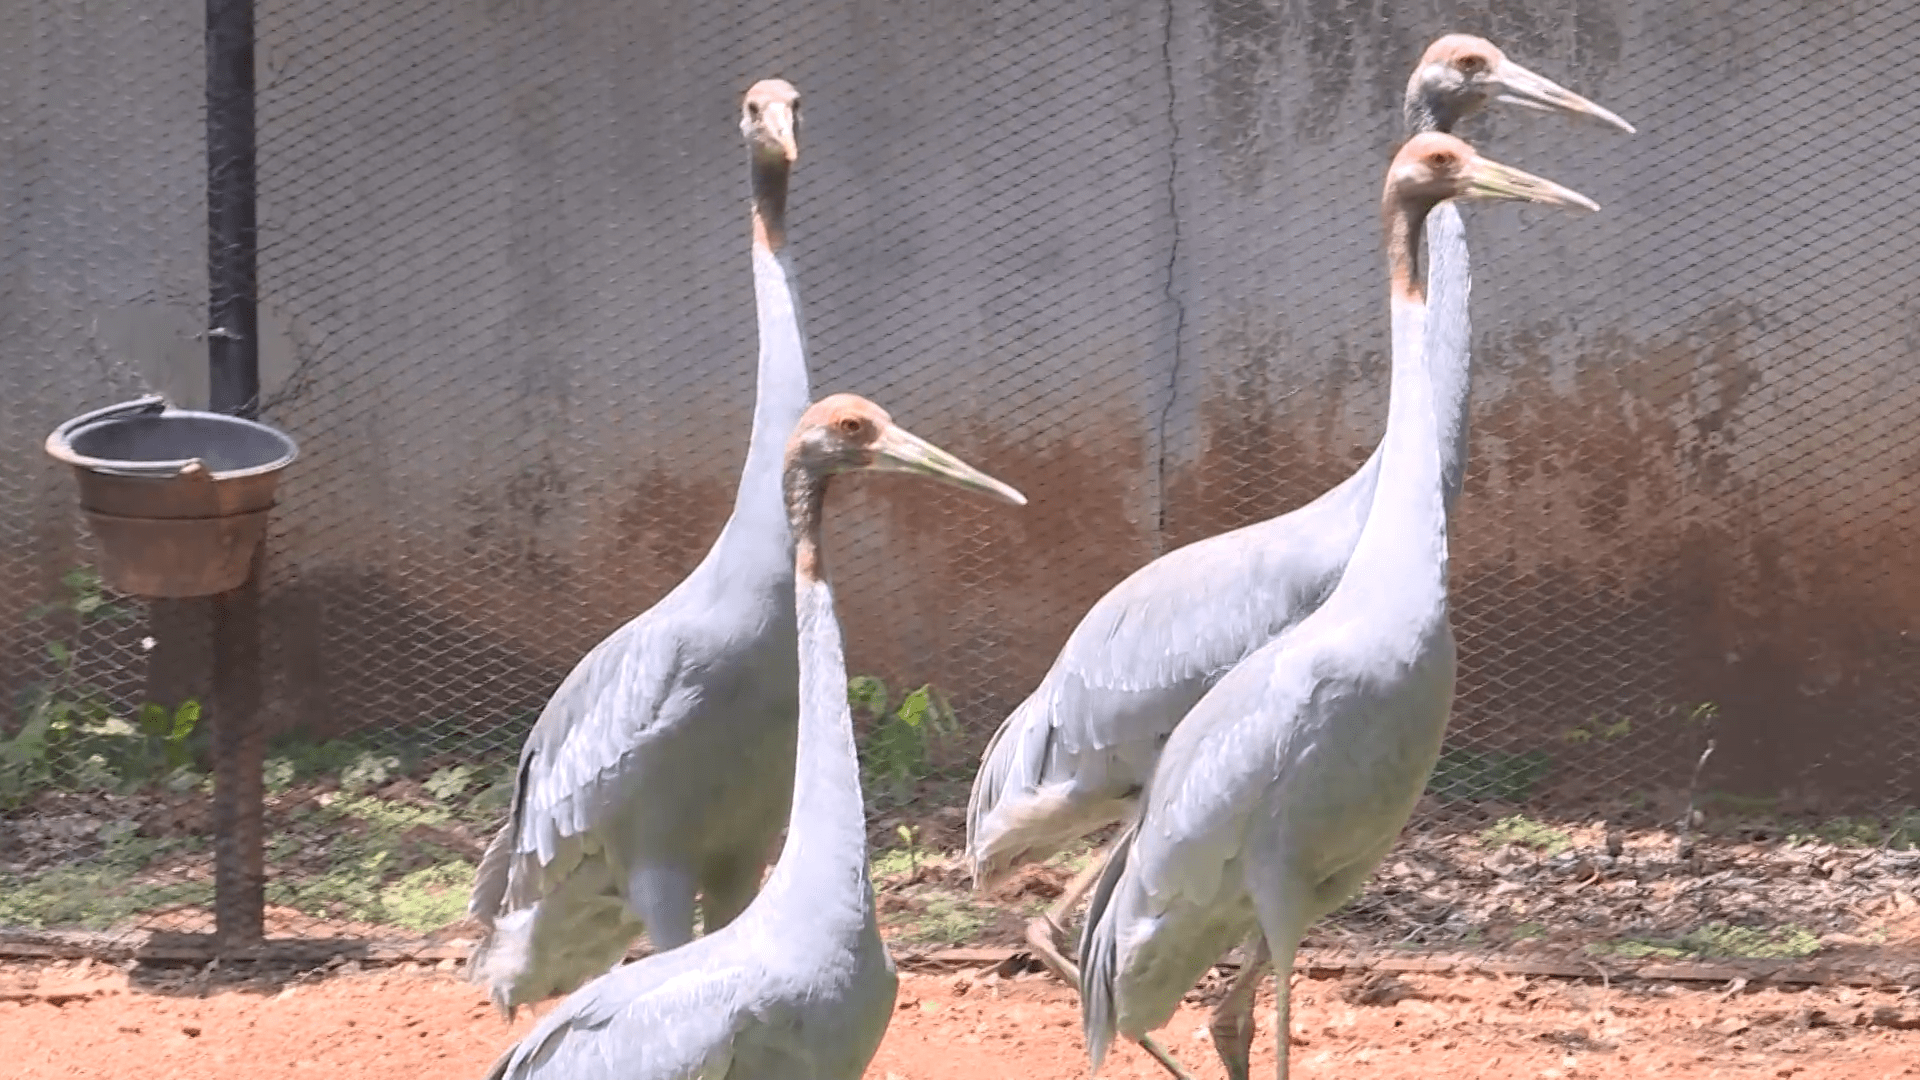 泰国保护濒危赤颈鹤初见成效